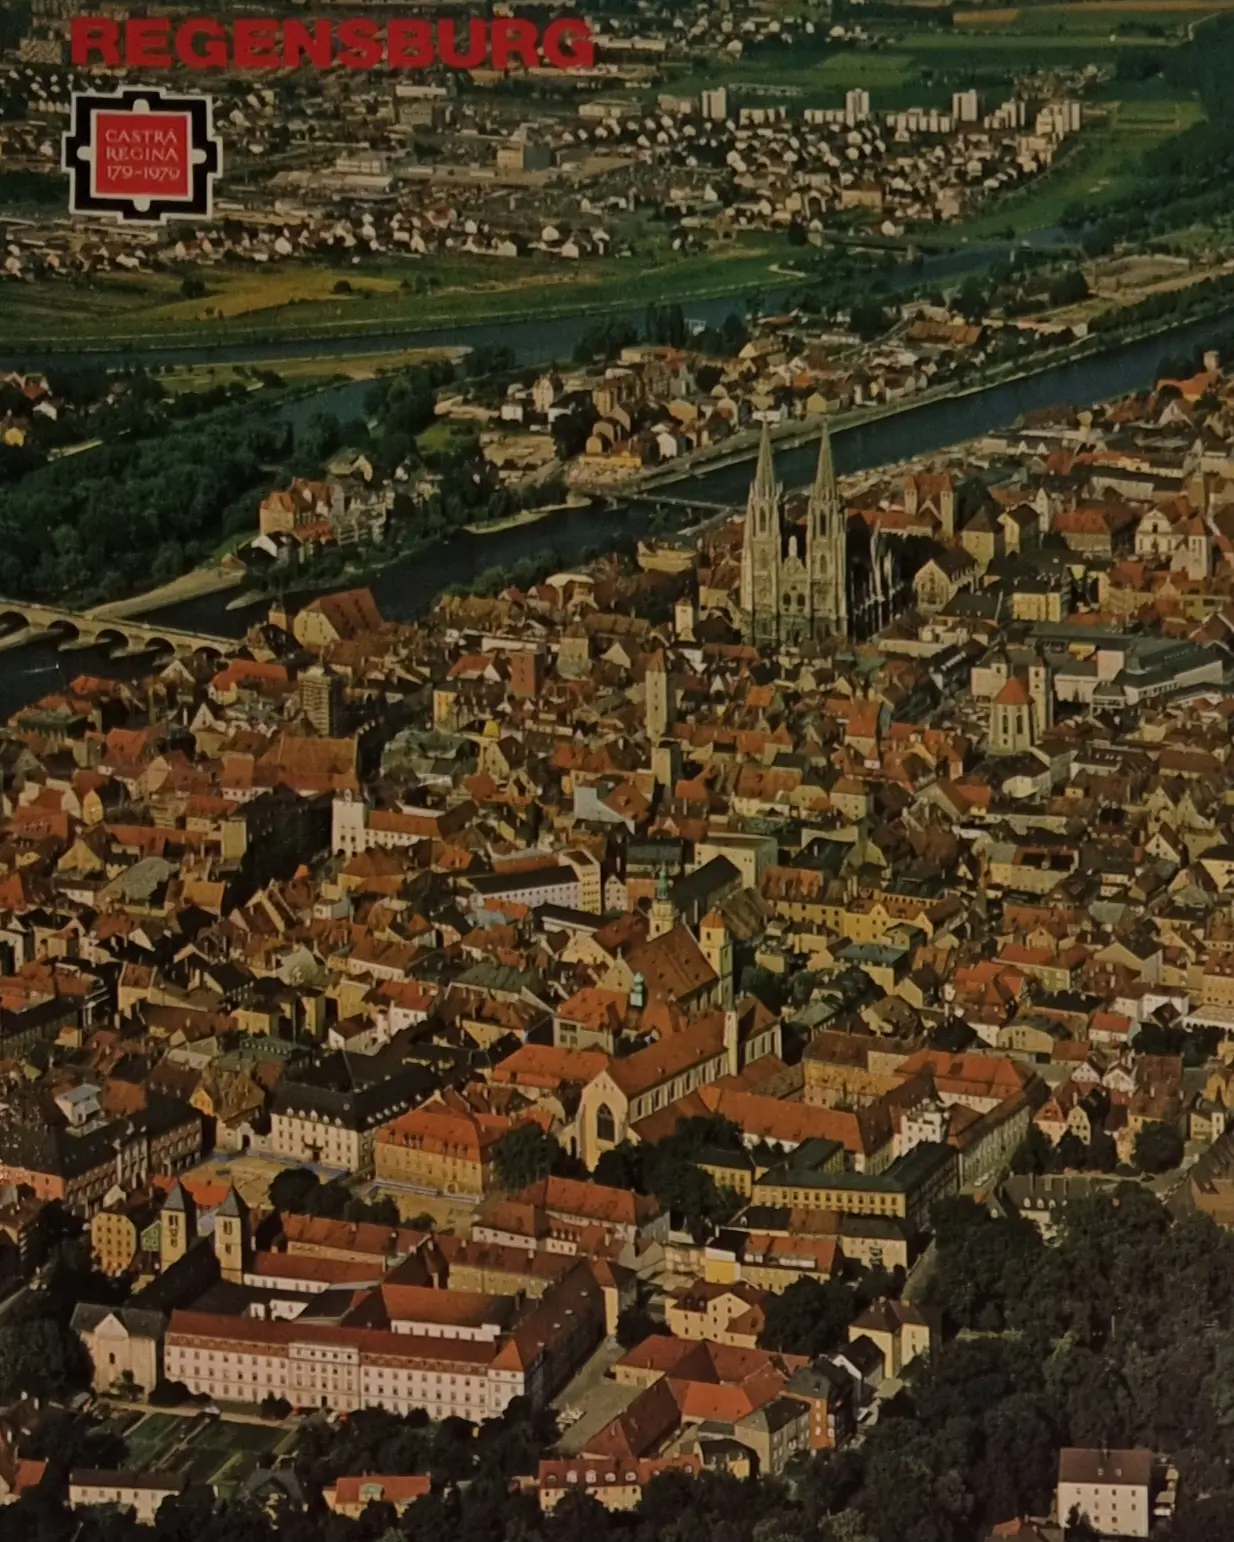 Zweipunkt Meisterfoto Puzzle 555 ungleiche Teile Regensburg/Bayern 819111